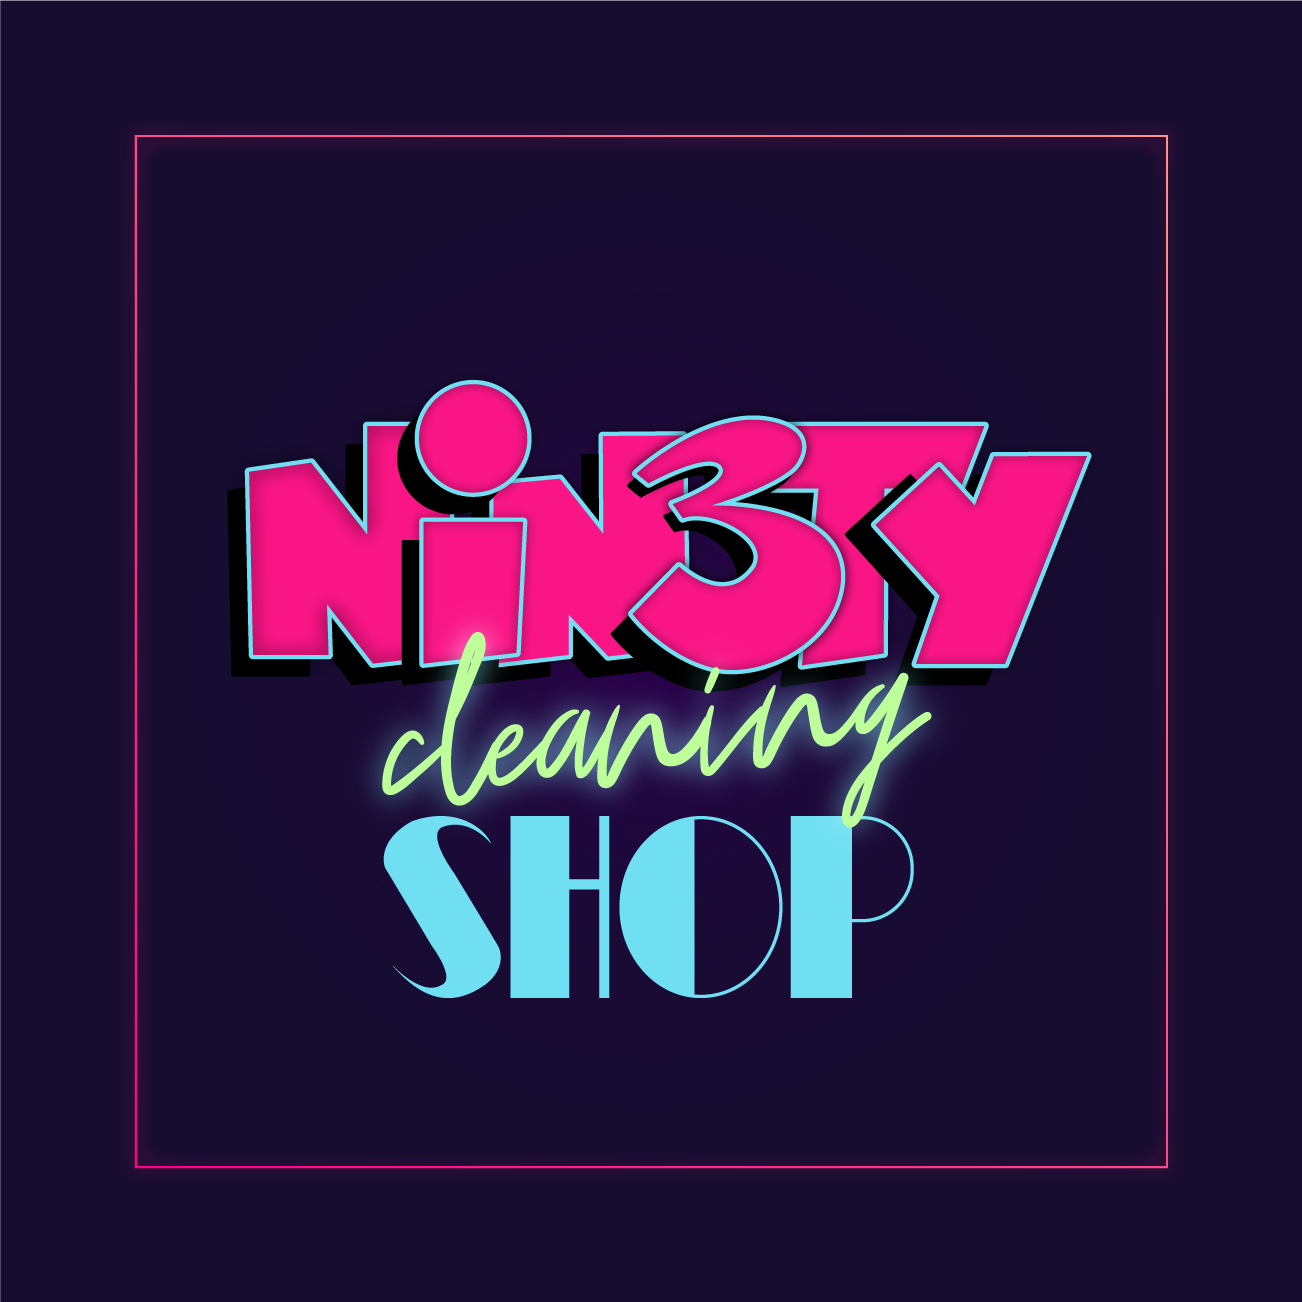 Ninety Shop